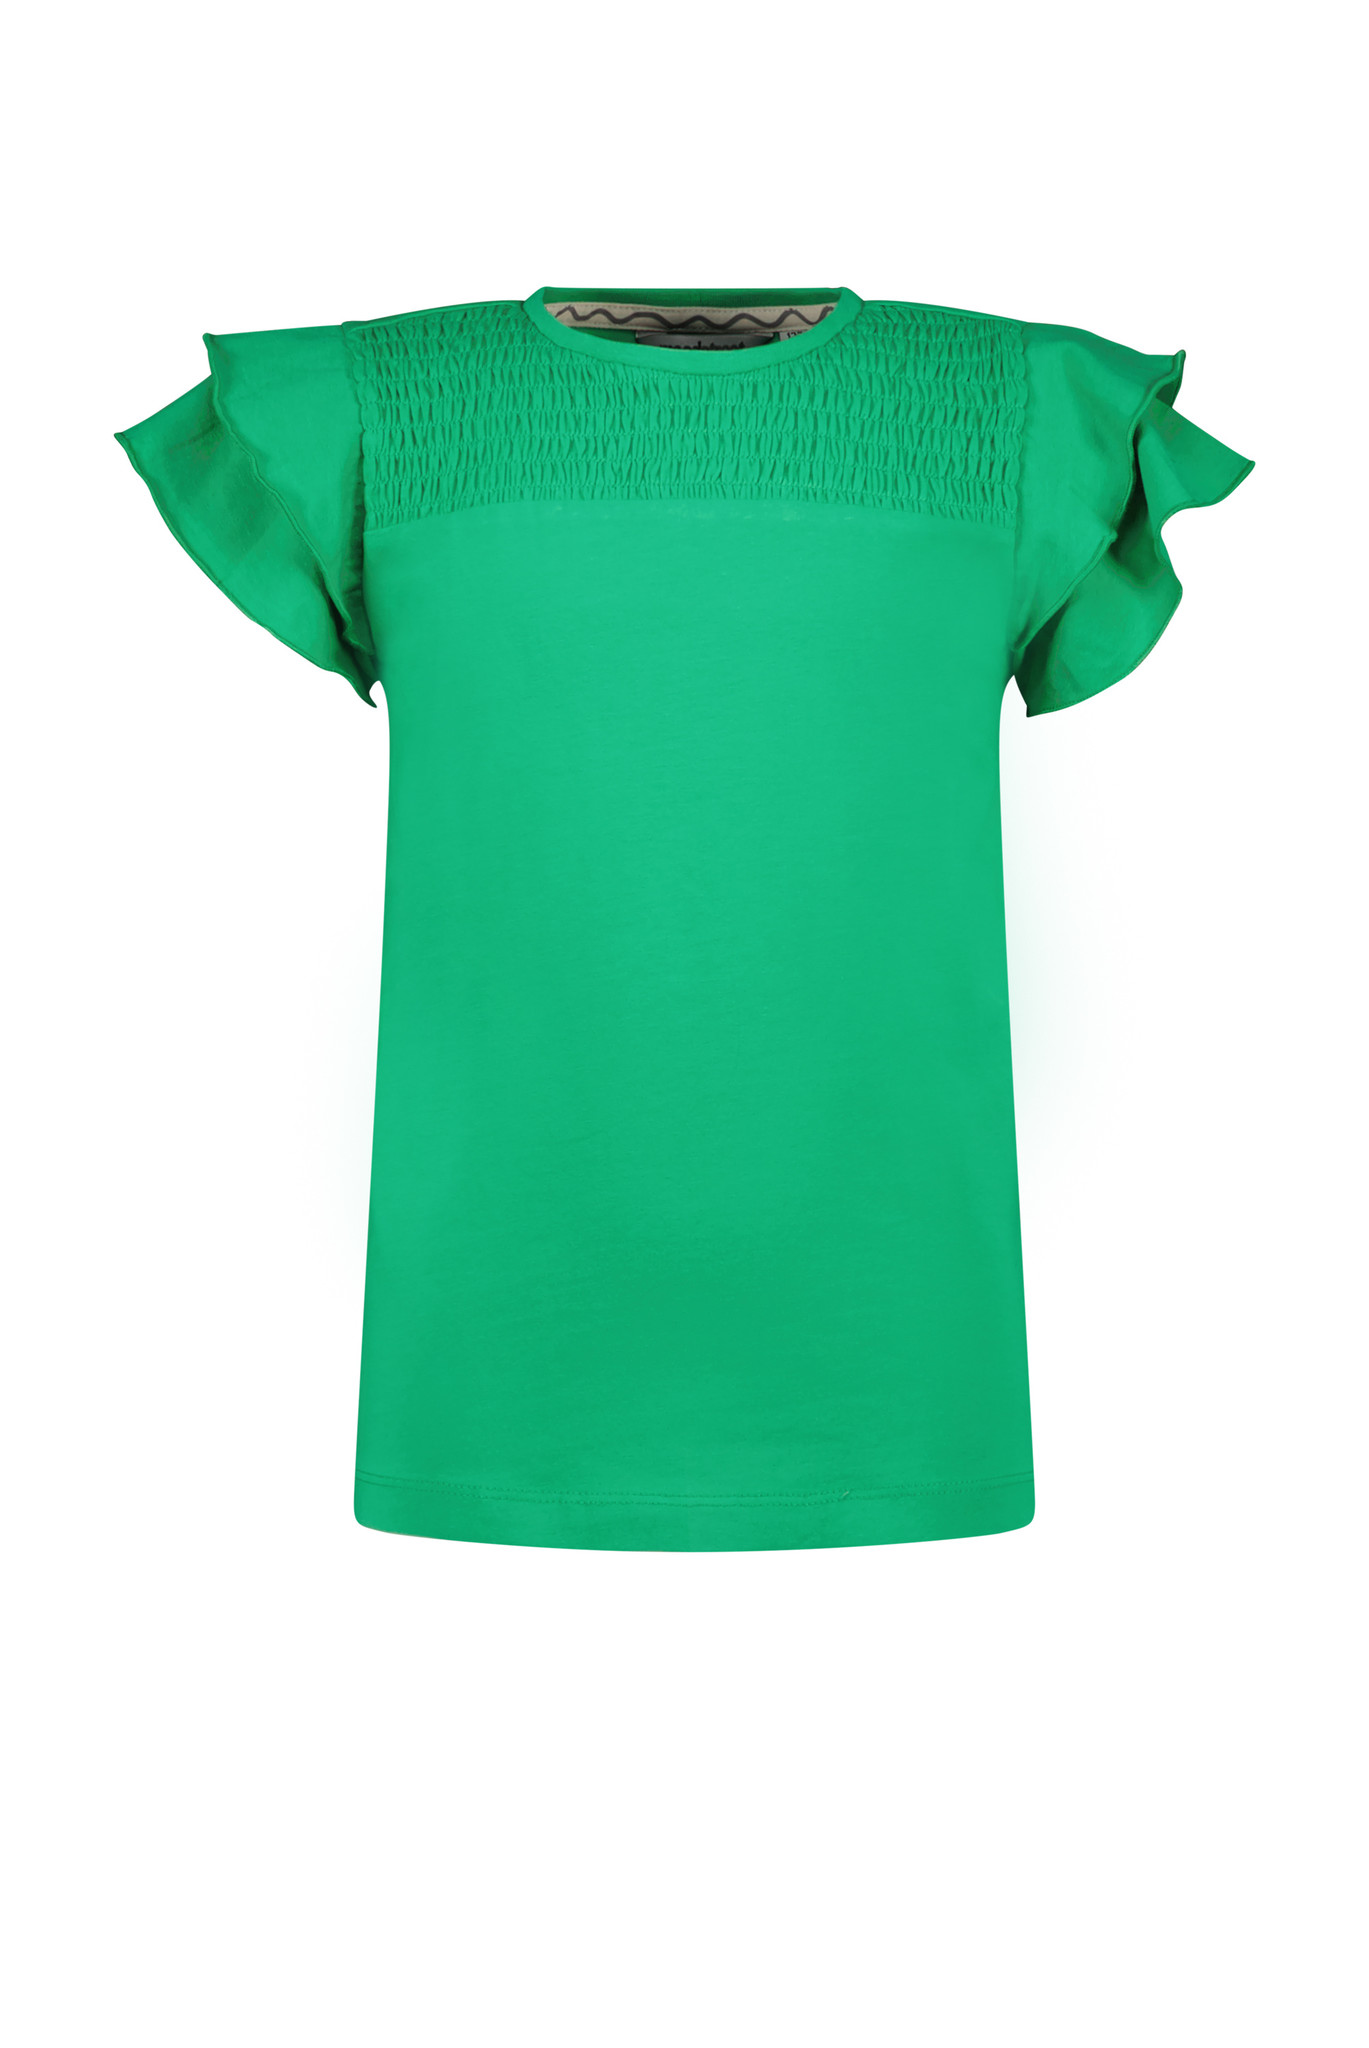 Moodstreet Meisjes t-shirt smock ruffel - Spring groen